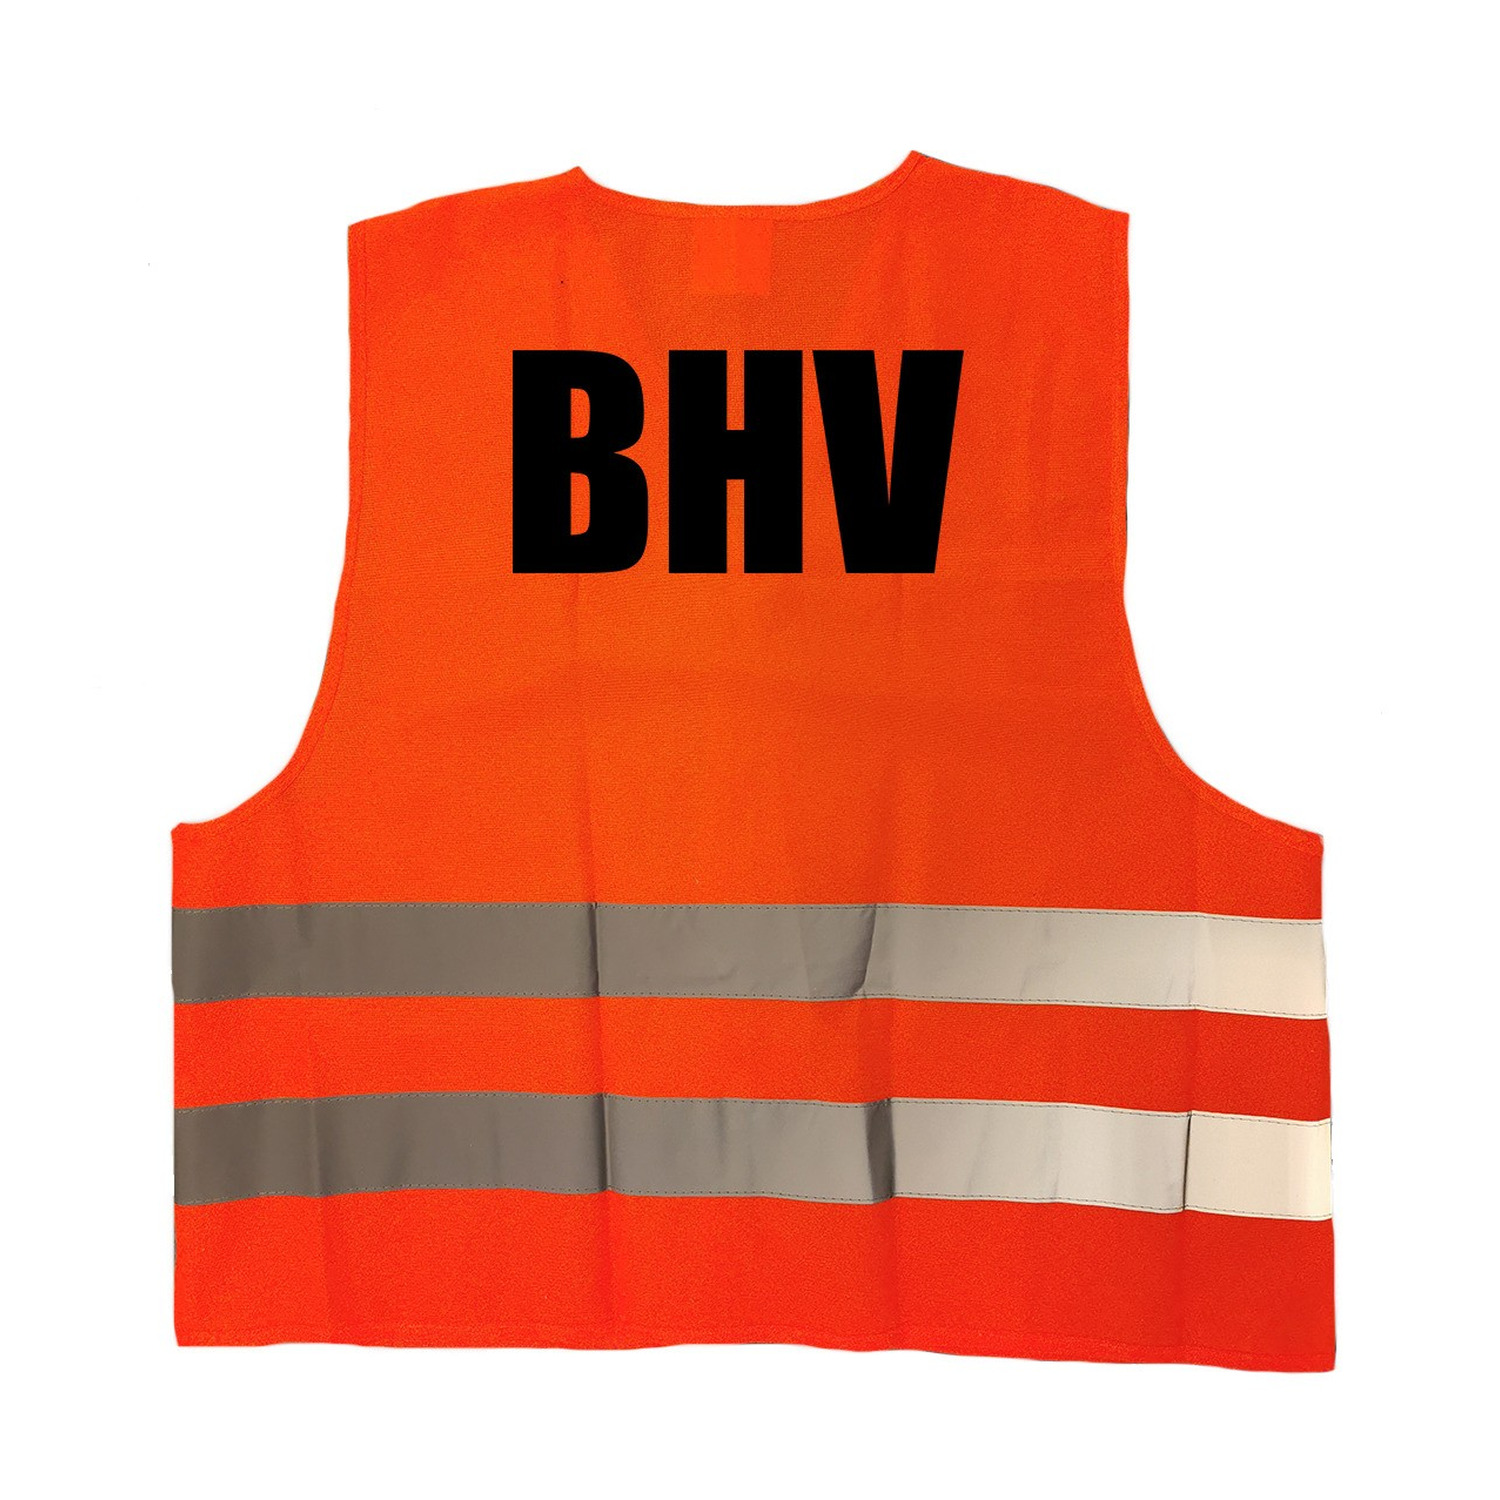 Oranje veiligheidshesje BHV bedrijfshulpverlening voor volwassenen